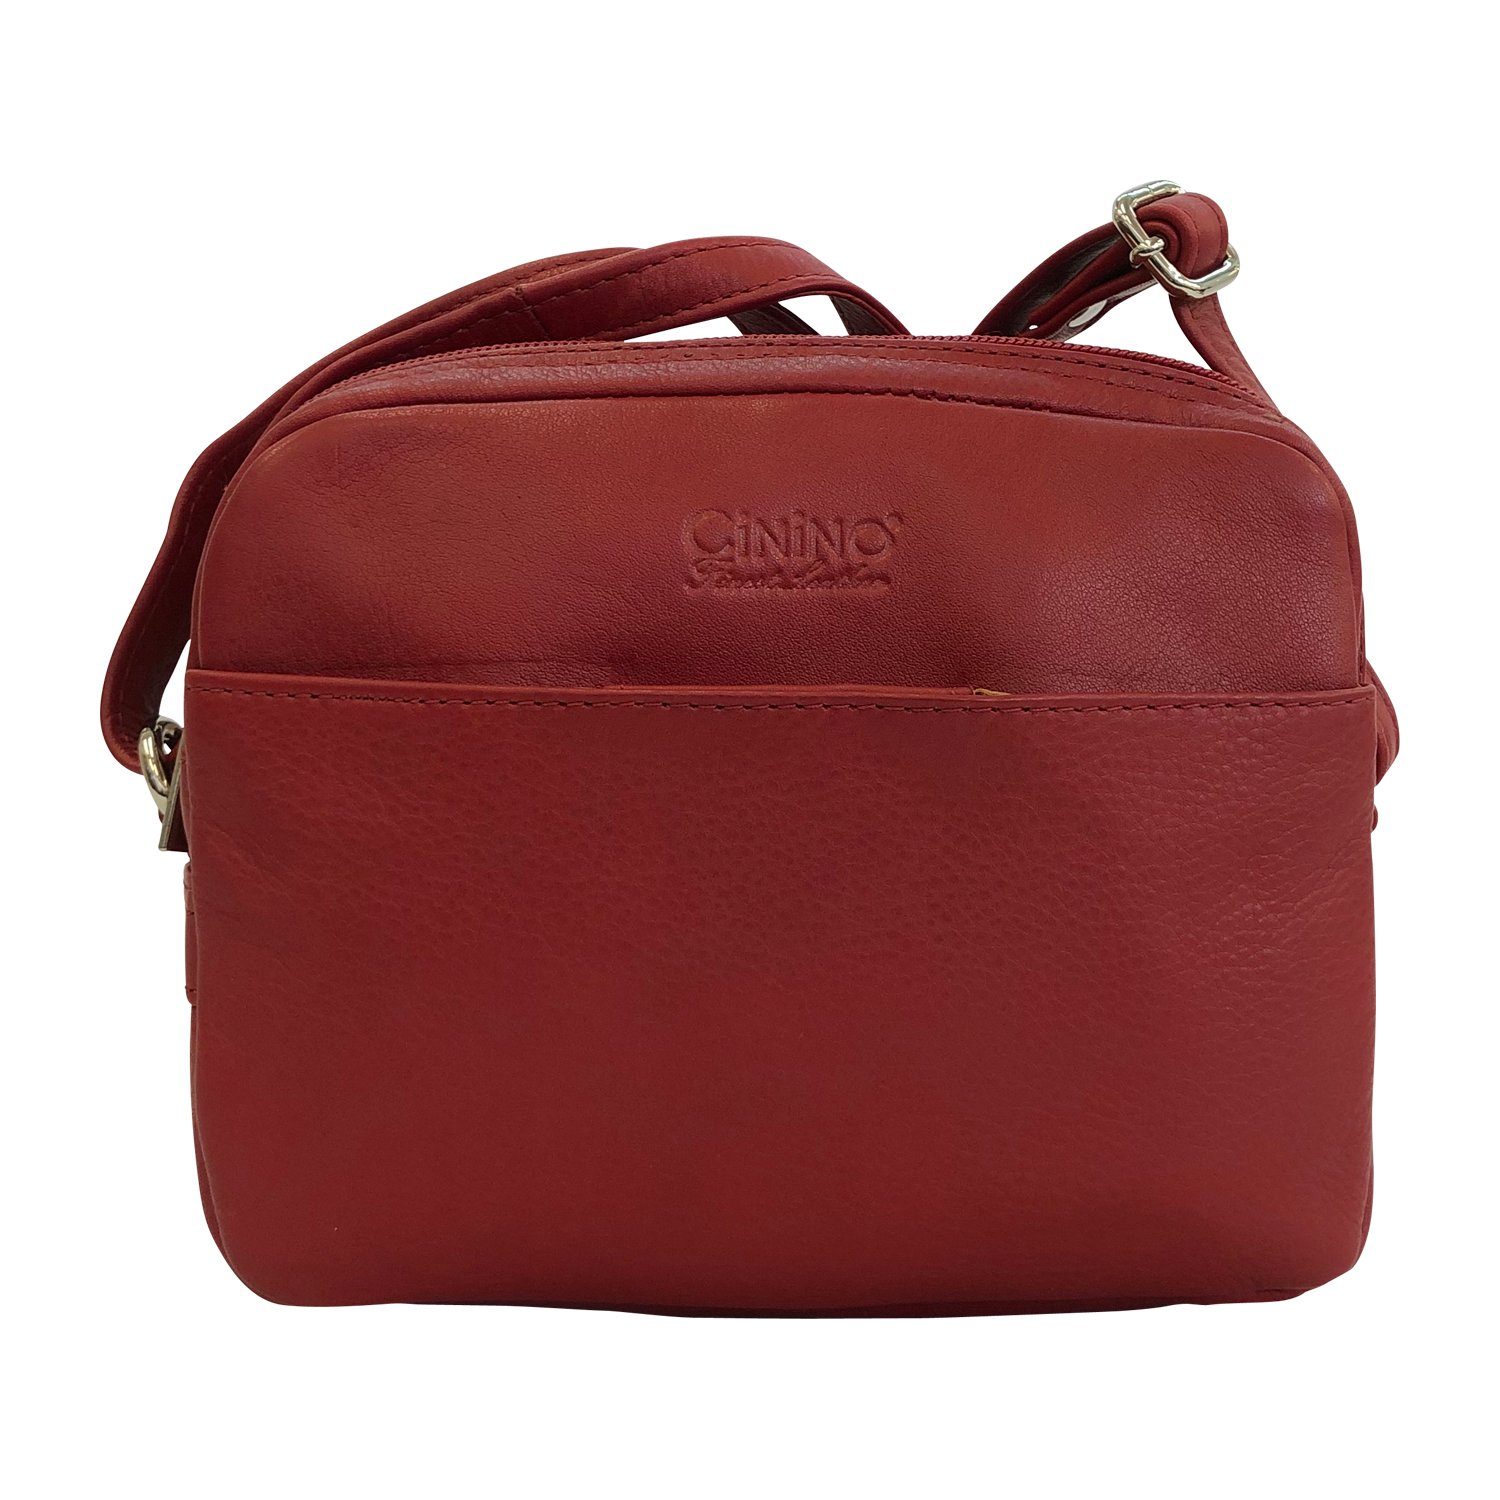 Cinino Handtasche Lisa, Umhängetasche Ledertasche Rot